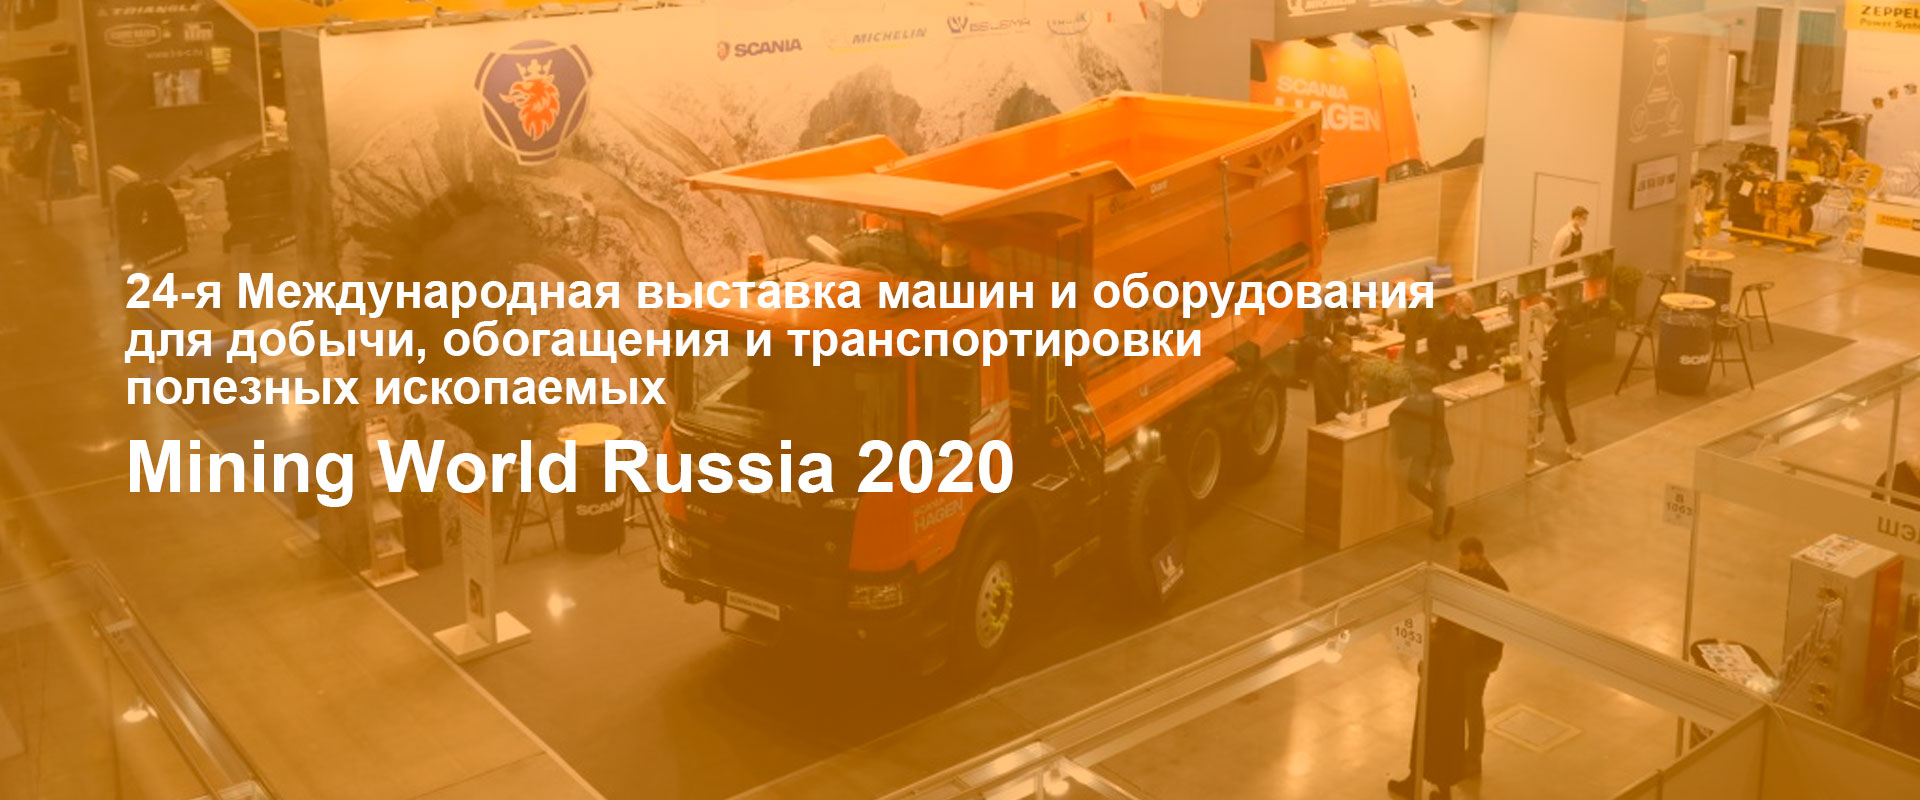 Международная выставка машин и оборудования Mining World Russia 2020